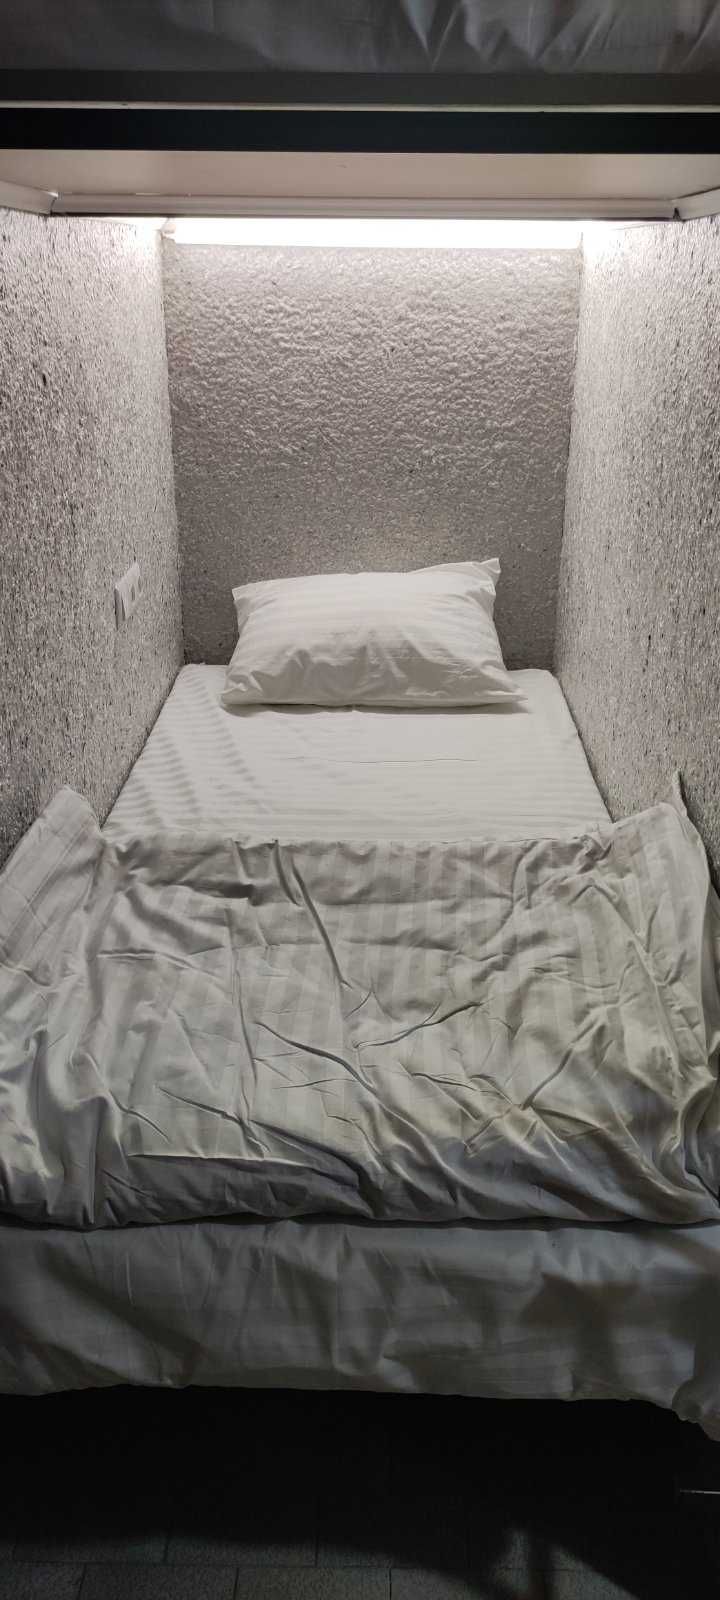 Хостел в Броварах, ліжко-місце в кімнаті по 4-8 місць, окремі капсули